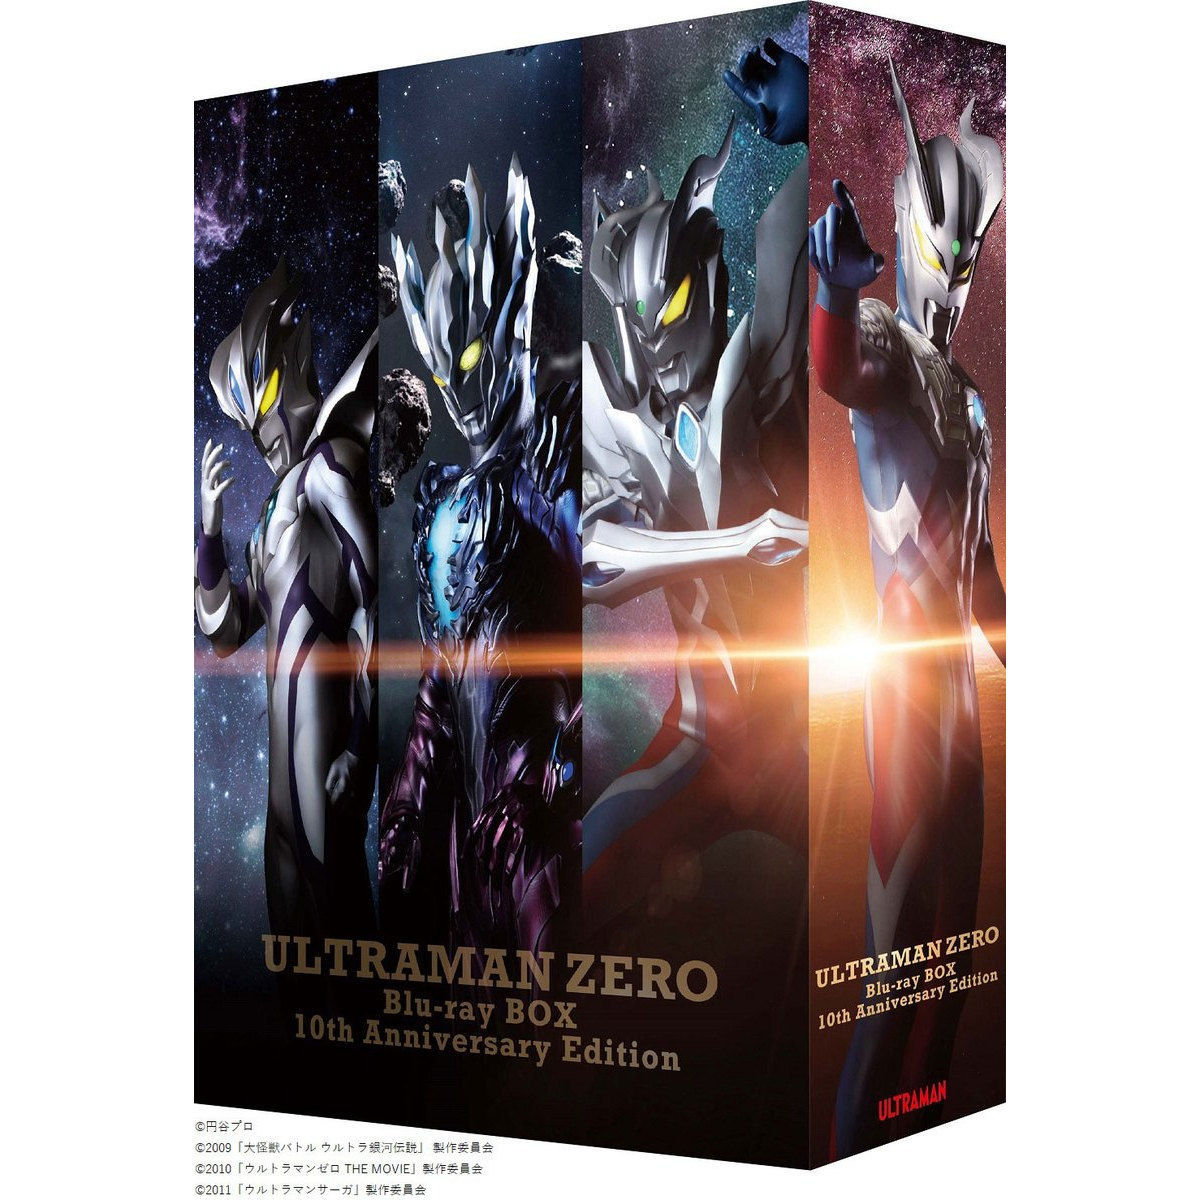 ウルトラマンゼロ Blu-ray BOX 10th Anniversary Edition【A-on